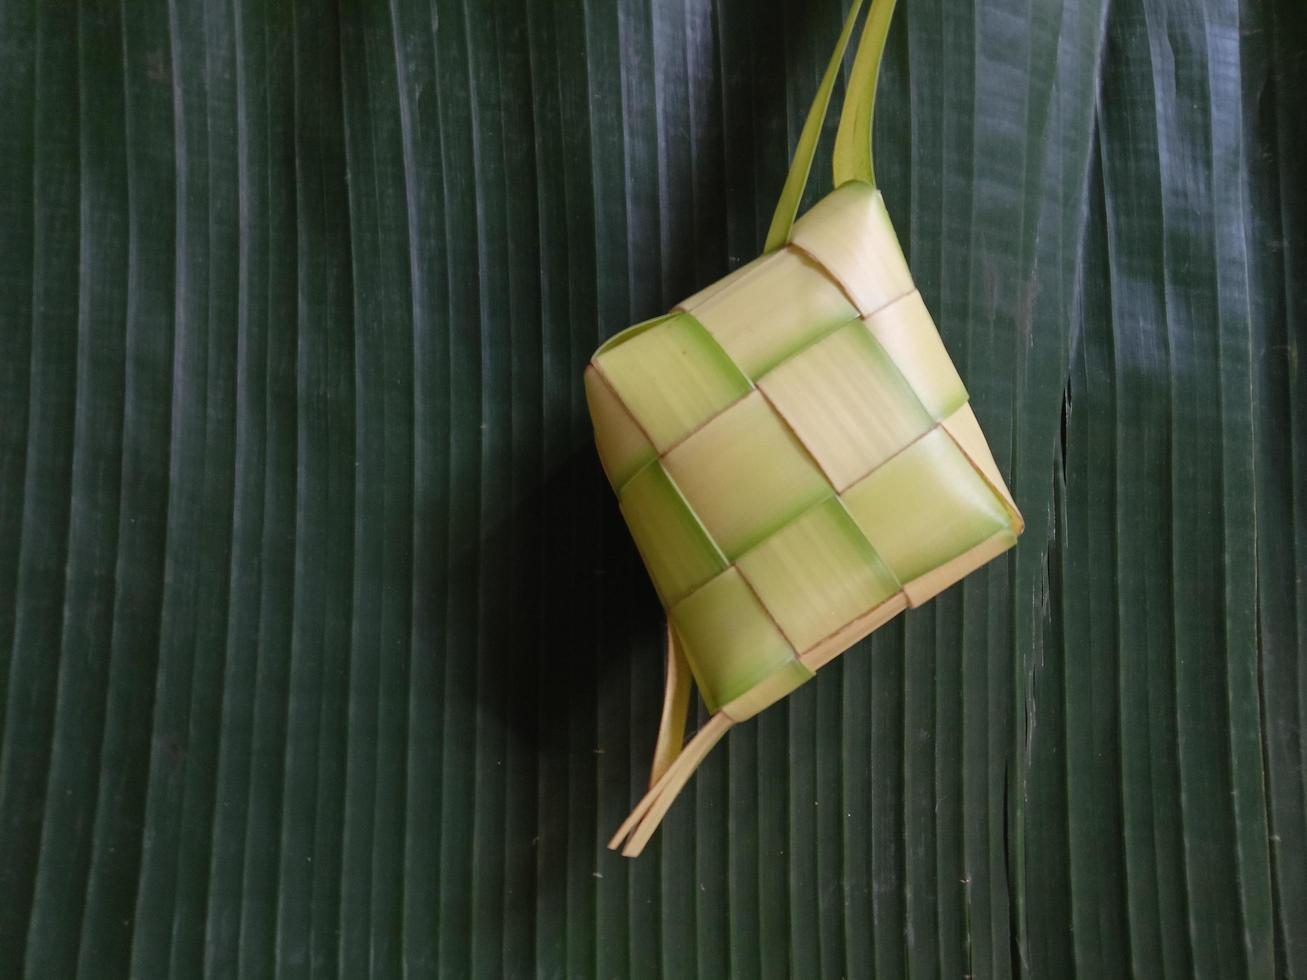 geïsoleerd. leeg ketupat heeft niet geweest gevulde met rijst. in Indonesië, het vaak verschijnt voordat de viering van eid al-fitr na Ramadan. ontwerp concept, donker groen achtergrond. foto